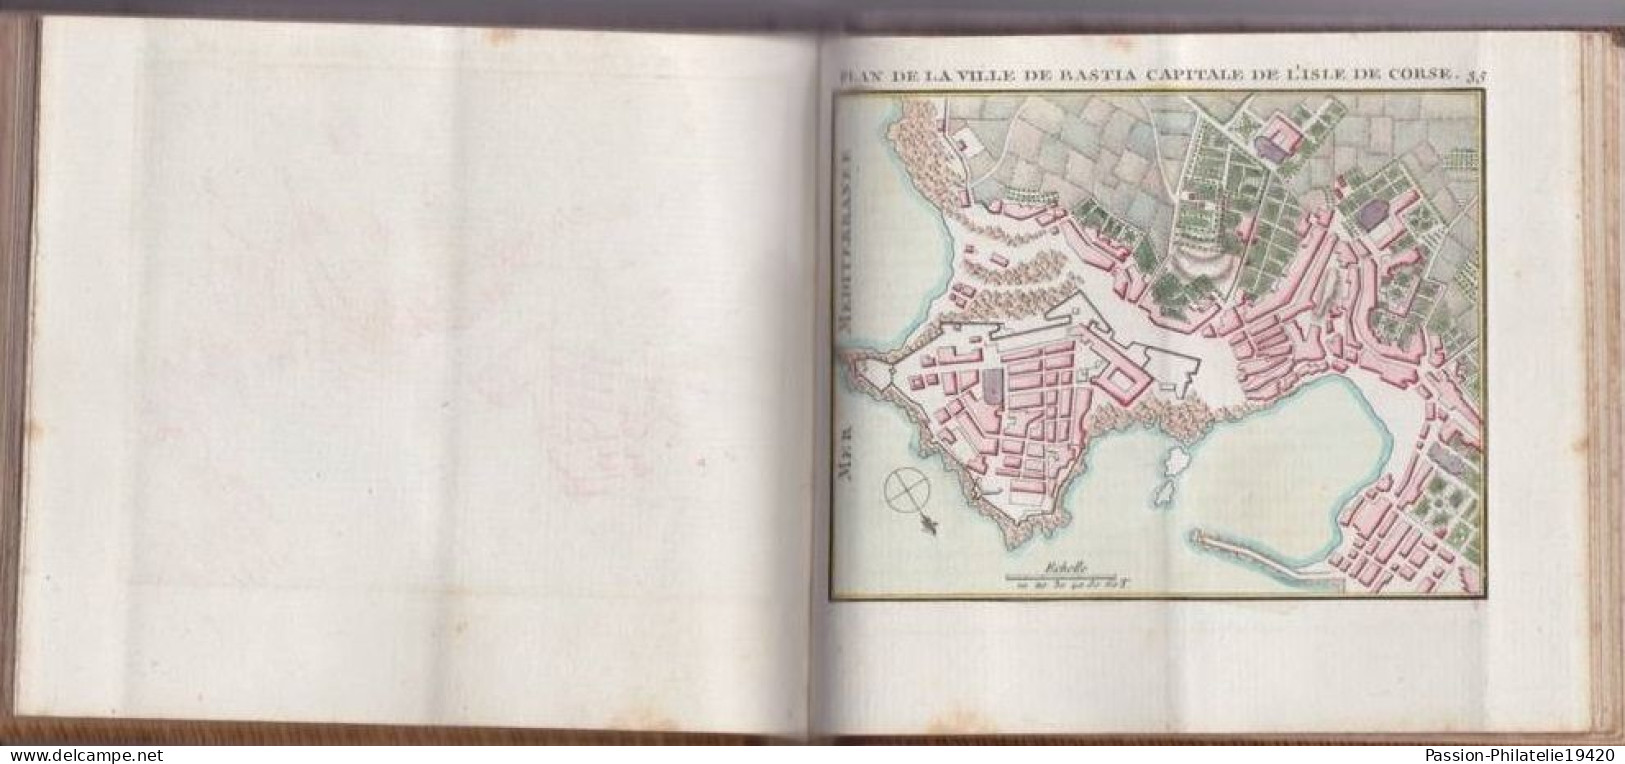 ATLAS MARITIME 1778 - Cartes Réduites des Côtes de France, des Isles voisines suivies des Plans - Corse, Jersey...